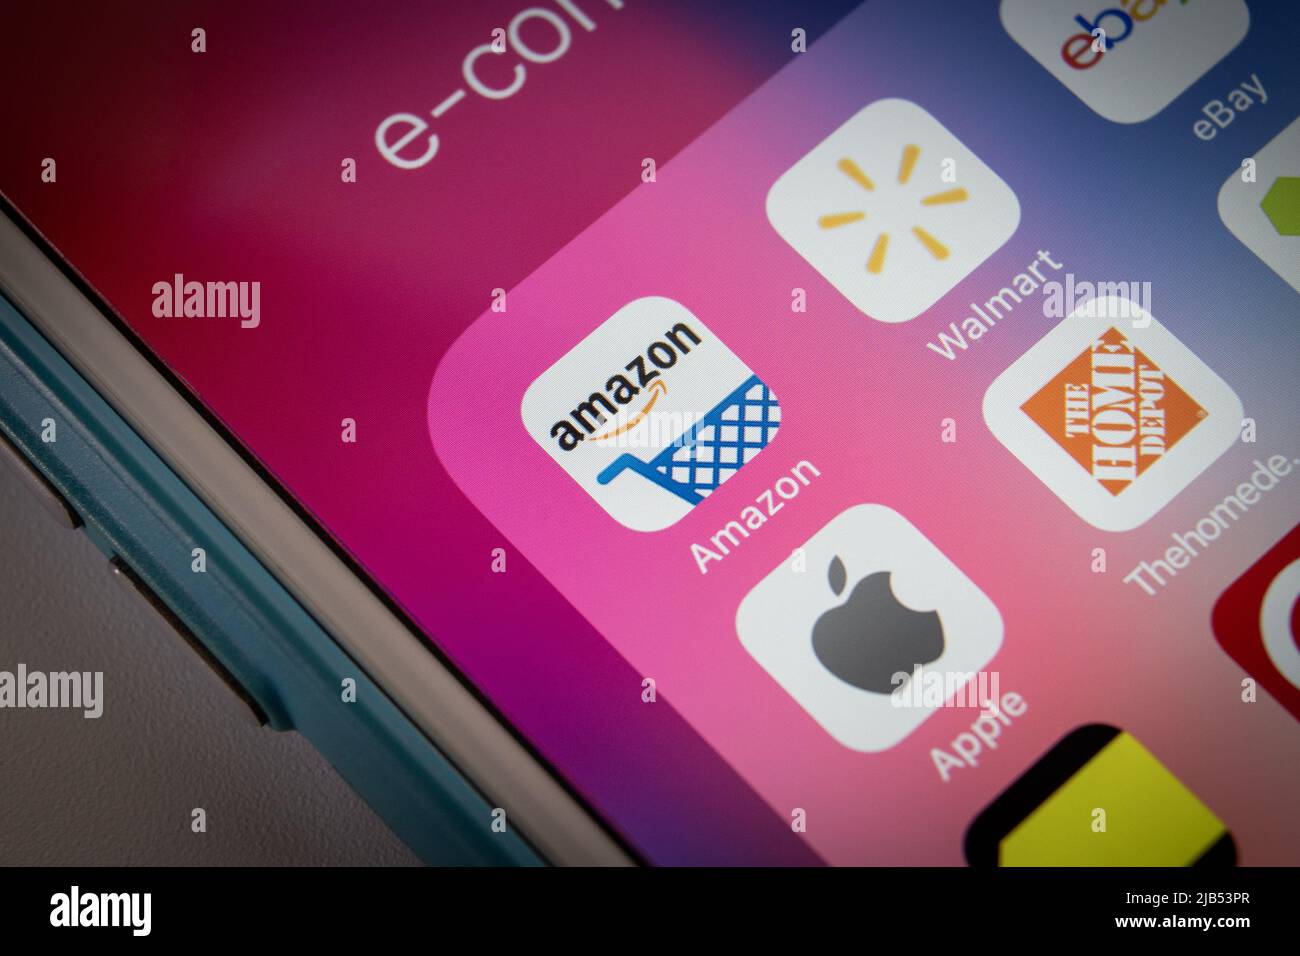 Apps von beliebten amerikanischen E-Commerce-Unternehmen (Amazon, Walmart, eBay, Apple, Home Depot, Wayfair, Best Buy, Target und Costco) auf dem iPhone Stockfoto